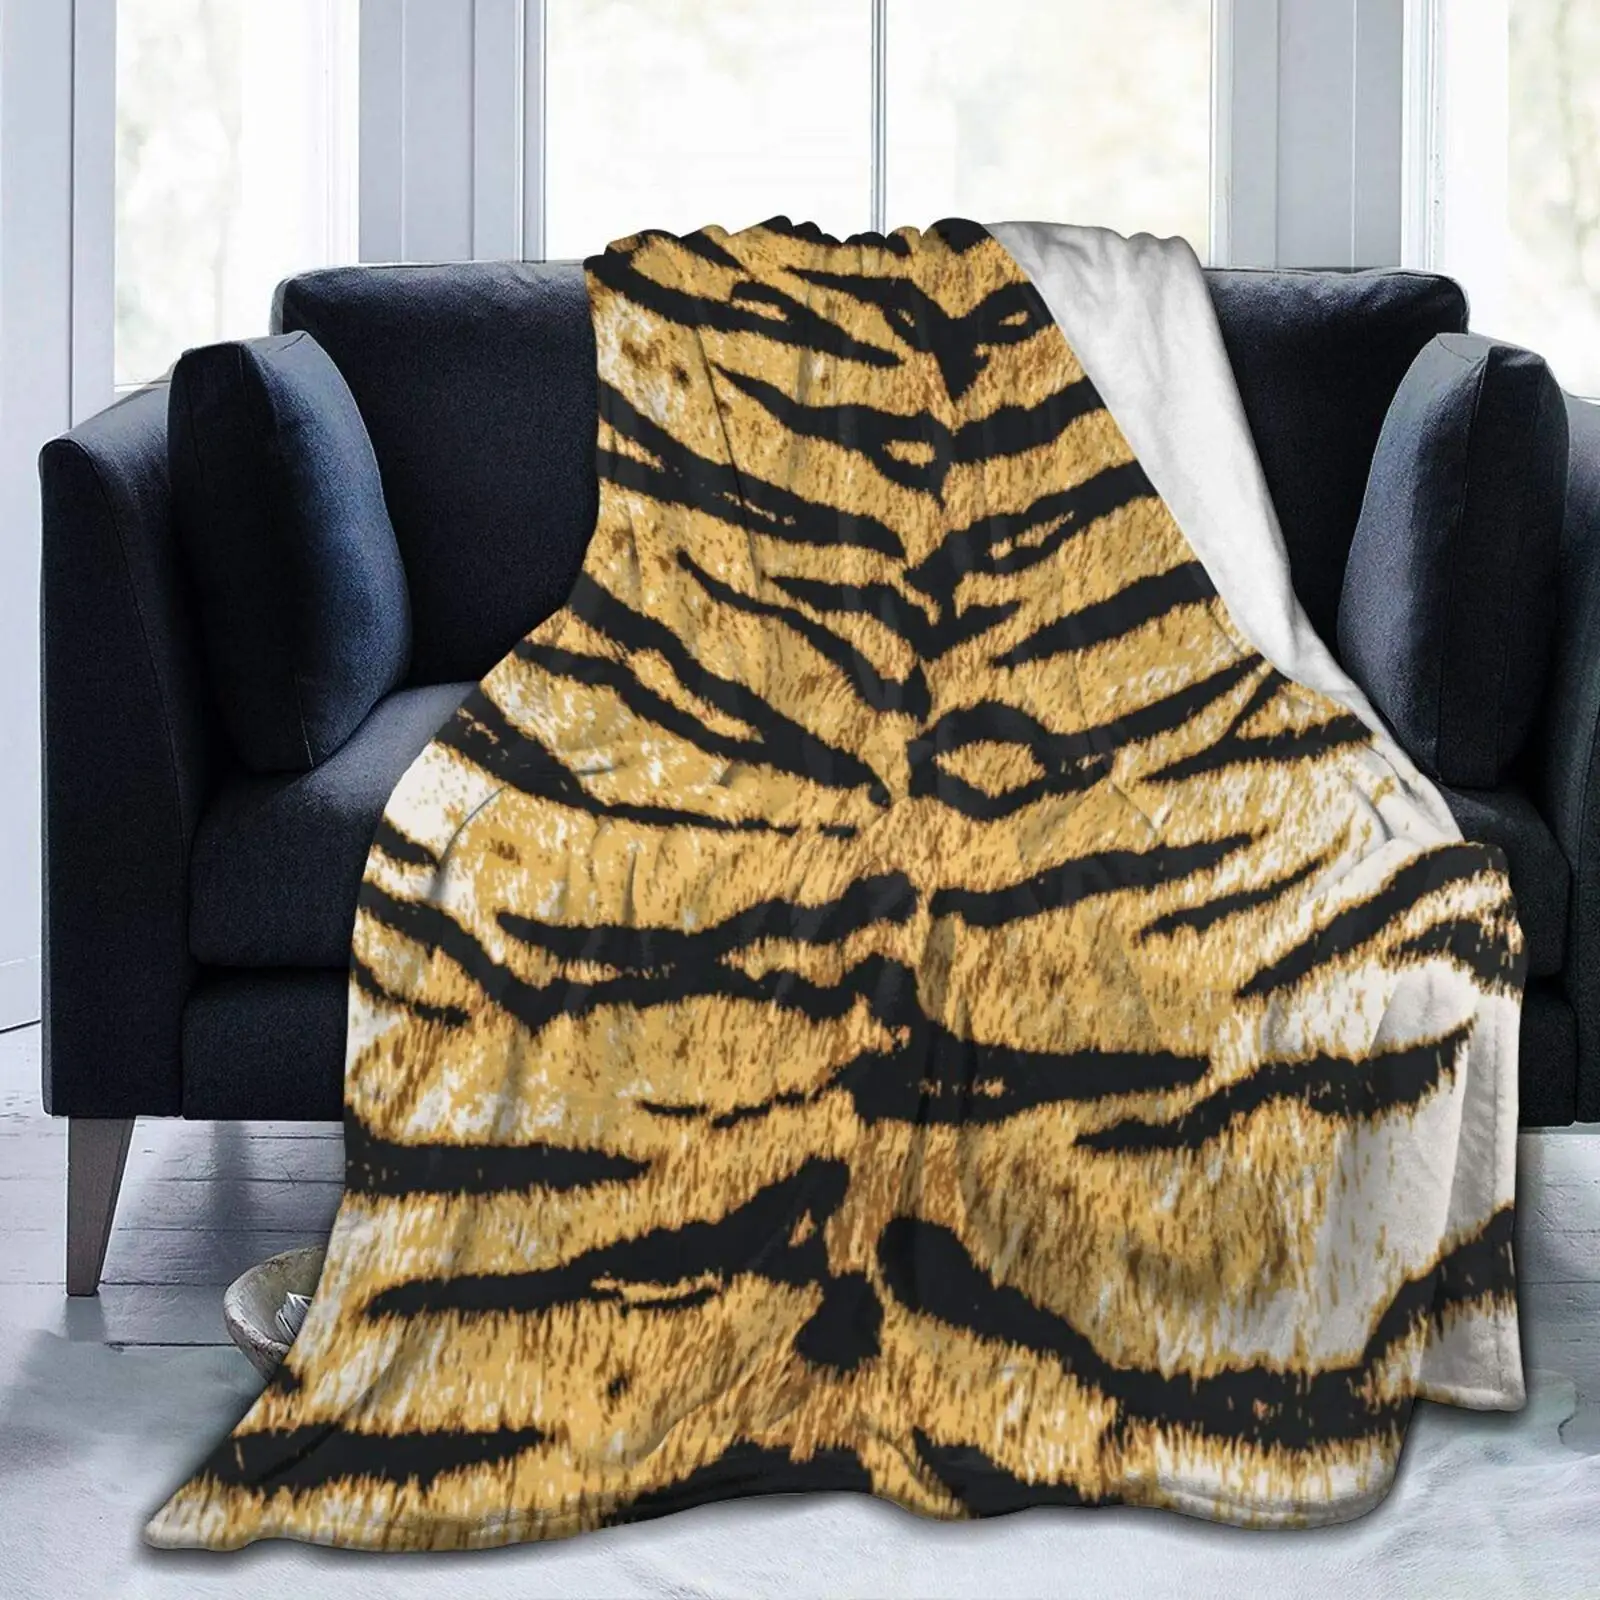 Реалистичные одеяла из тигровой шкуры, Фланелевый текстильный декор, шкура животного, Портативные теплые одеяла для кровати, коврик с принтом королевских животных. 2